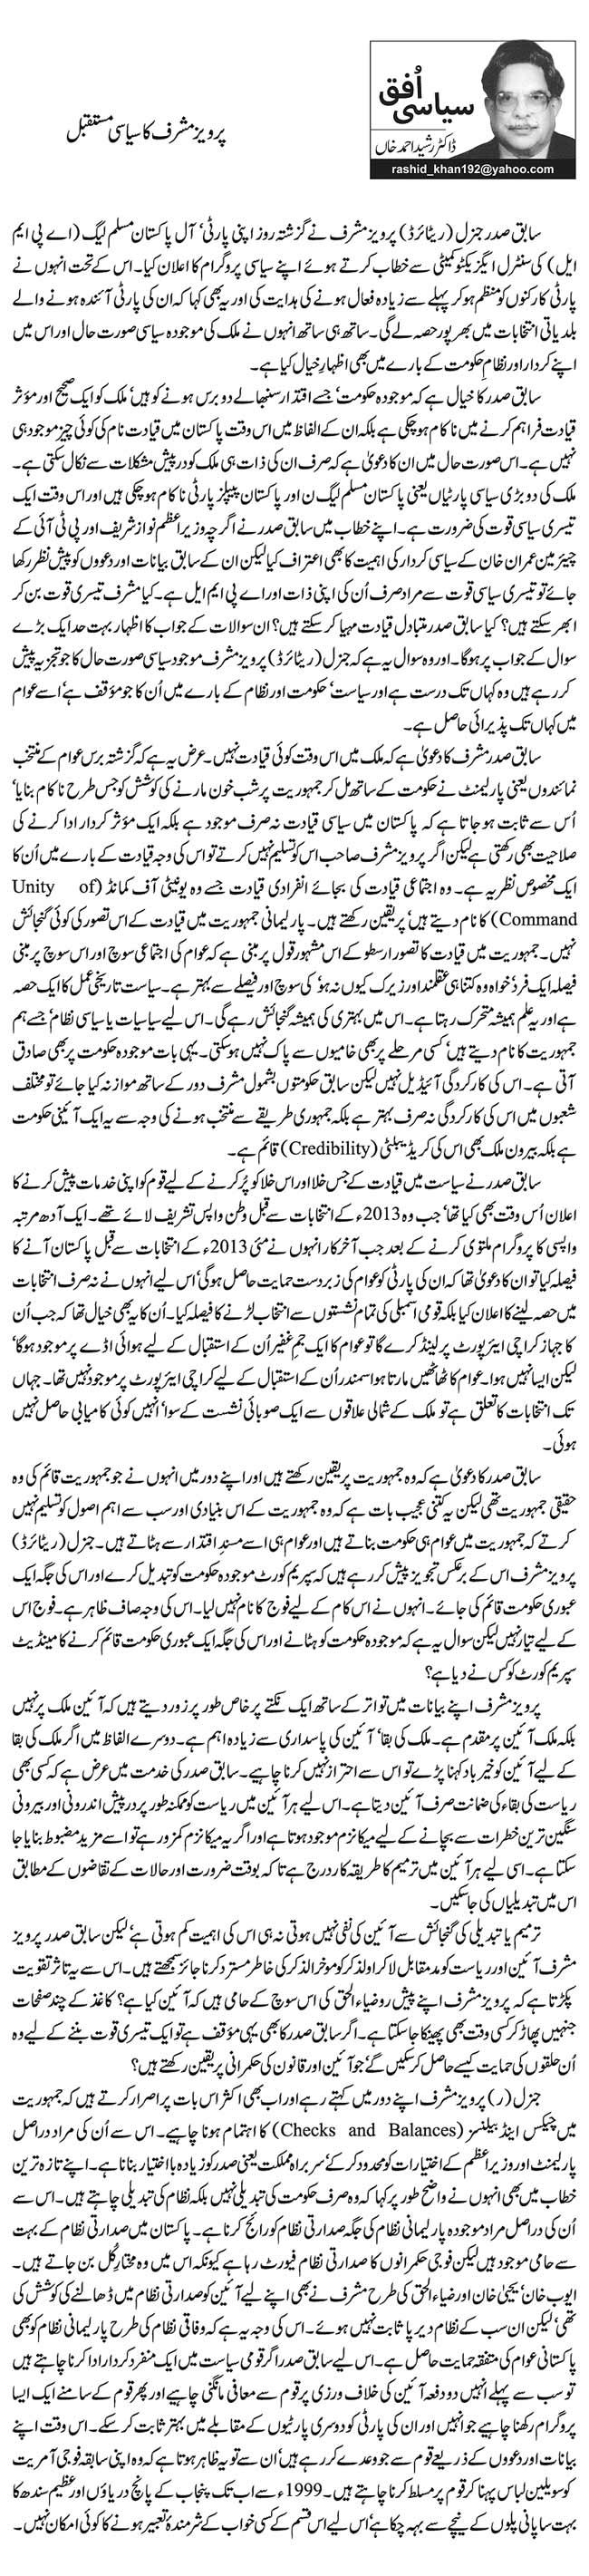 پرویز مشرف کا سیاسی مستقبل  